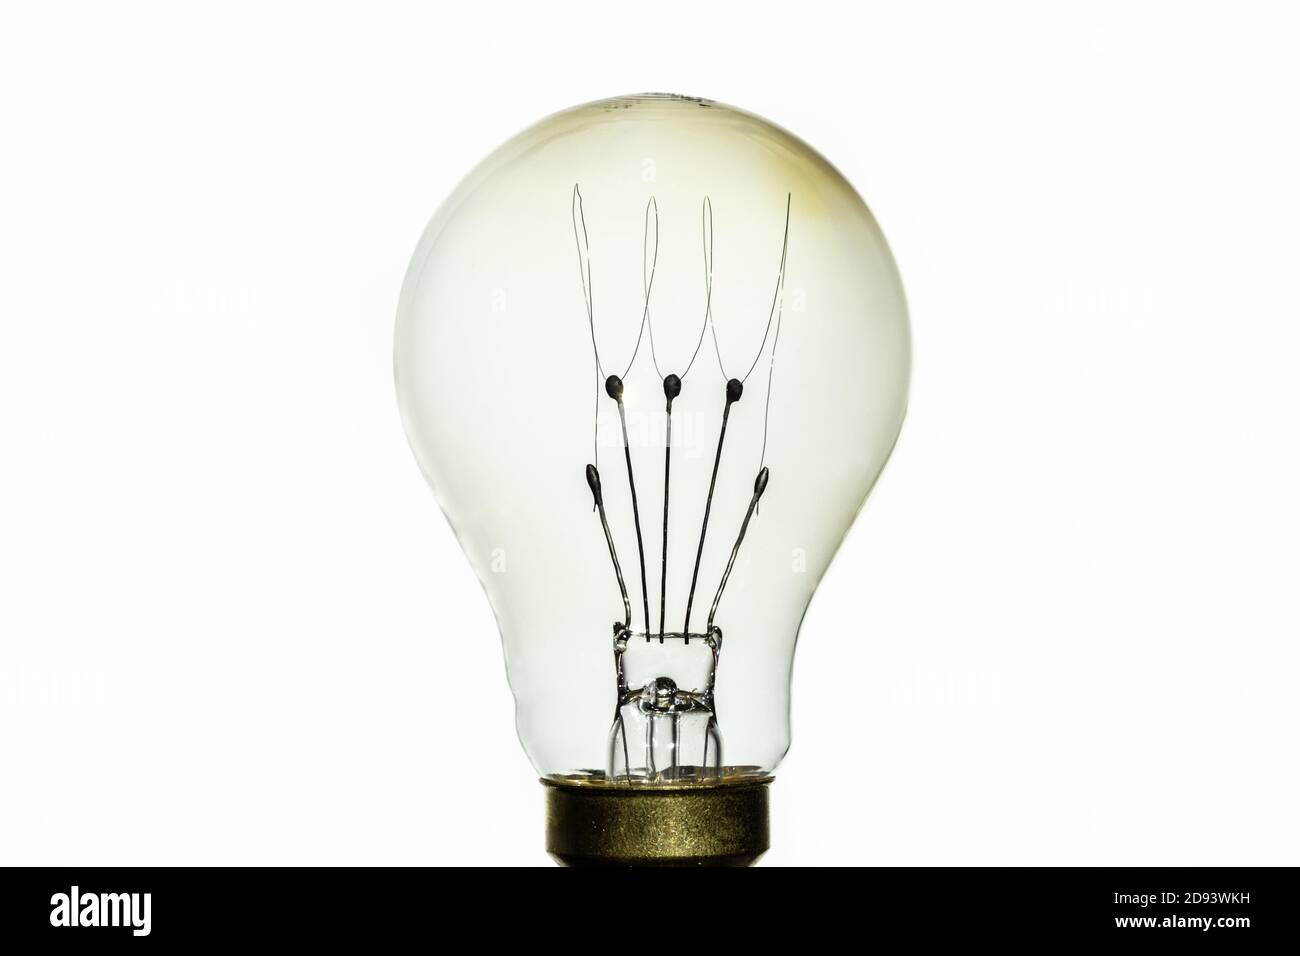 Paulmann Rustika Carbon Filament Lampe - eine moderne Lampe weitgehend identisch in Design und Struktur zu original Carbon Filament Lampen. Repro, modern Stockfoto